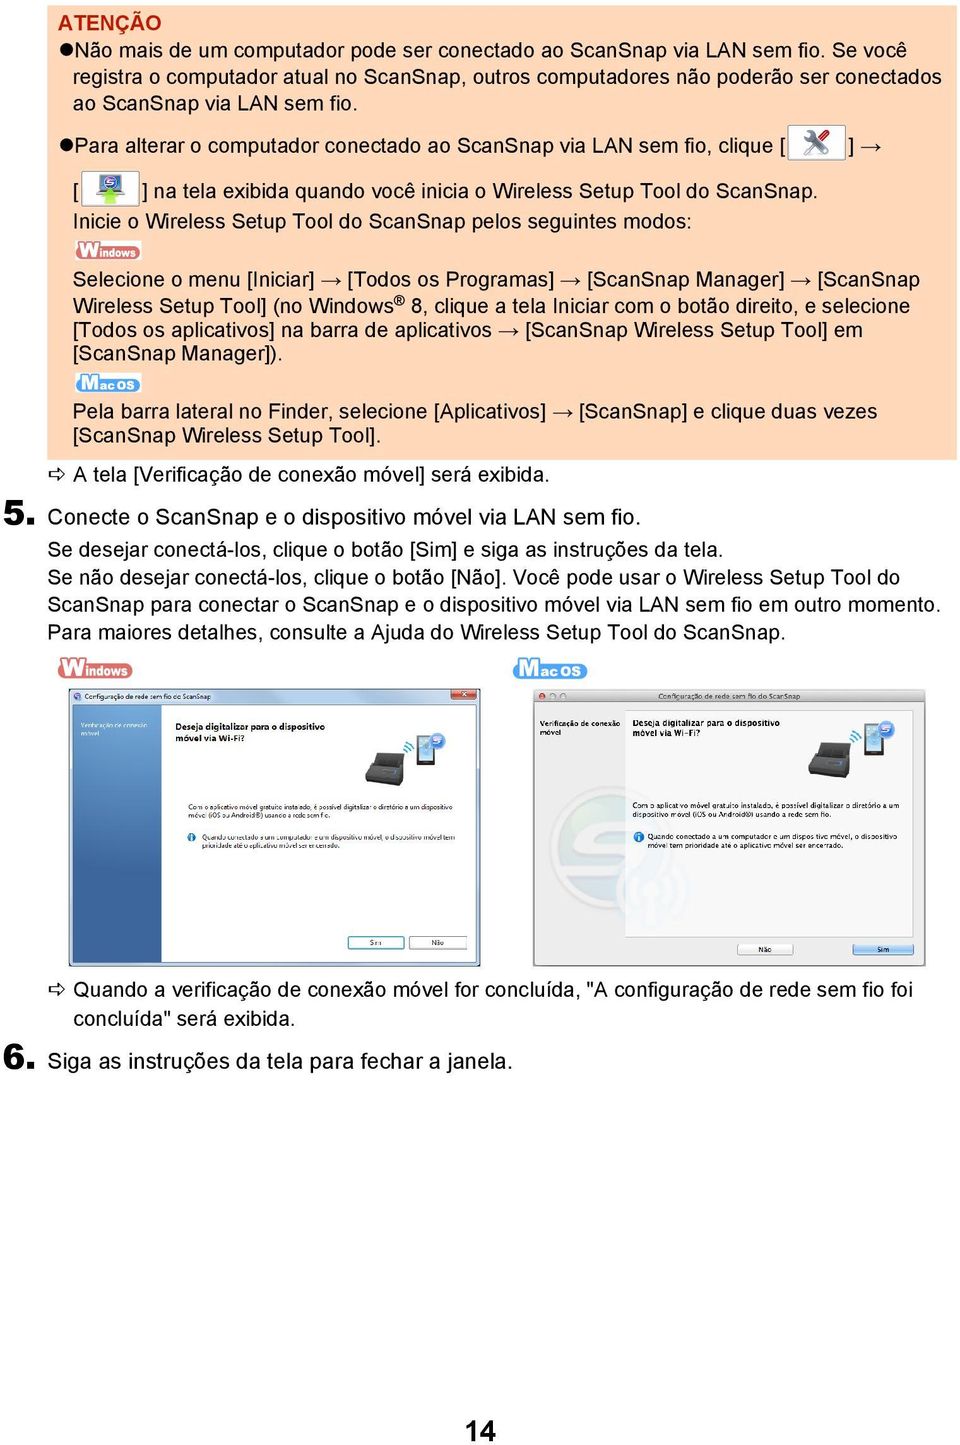 Inicie o Wireless Setup Tool do ScanSnap pelos seguintes modos: Selecione o menu [Iniciar] [Todos os Programas] [ScanSnap Manager] [ScanSnap Wireless Setup Tool] (no Windows 8, clique a tela Iniciar